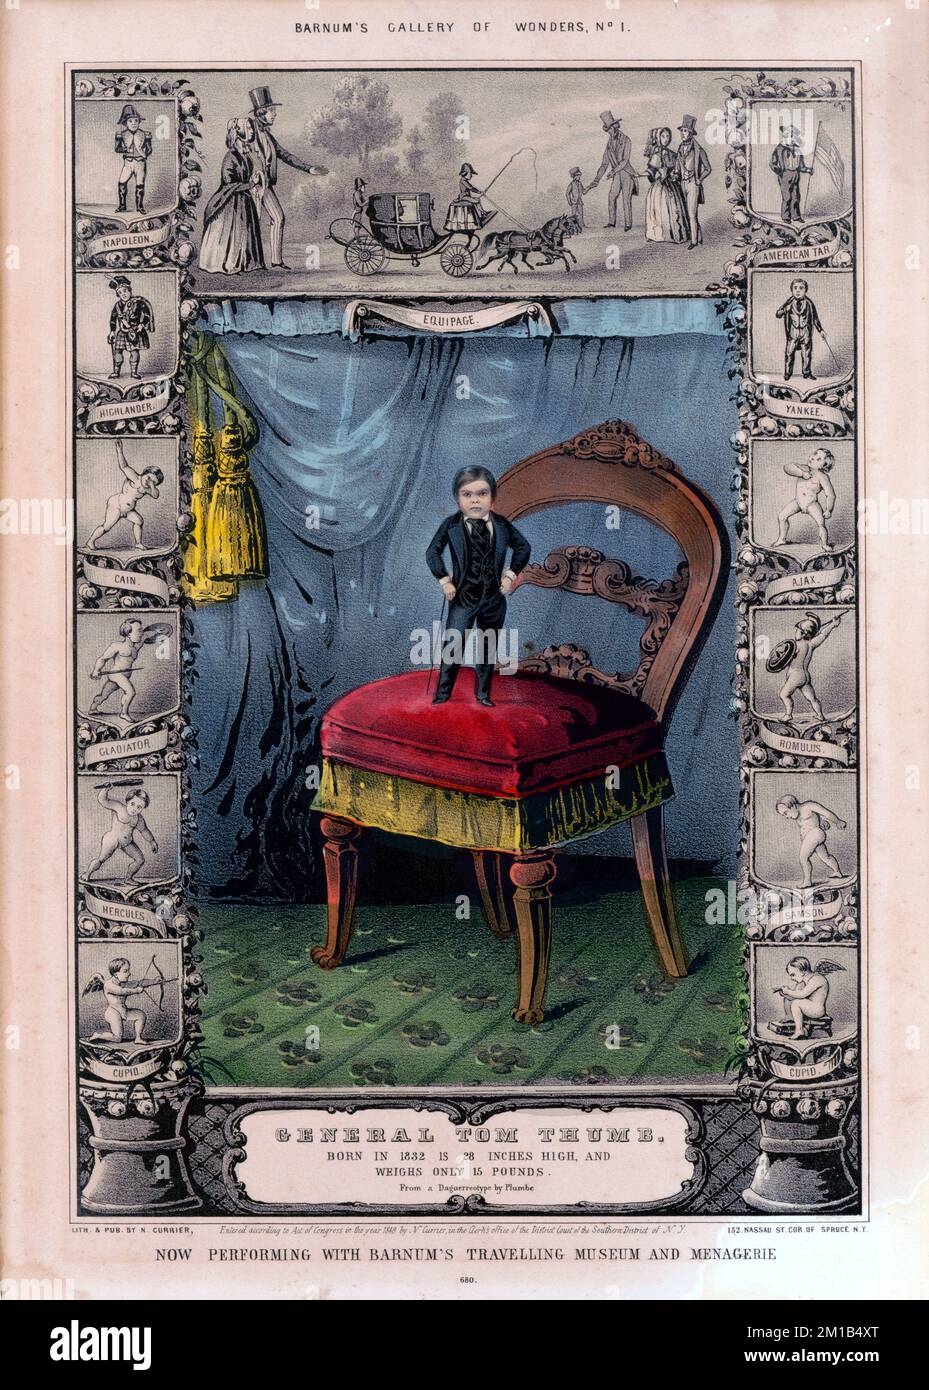 Illustrazione del generale Tom Thumb, Charles Sherwood Stratton (1838 – 1883), del generale Tom Thumb, nano americano e performer sotto il pioniere del circo P. T. Barnum. Foto Stock